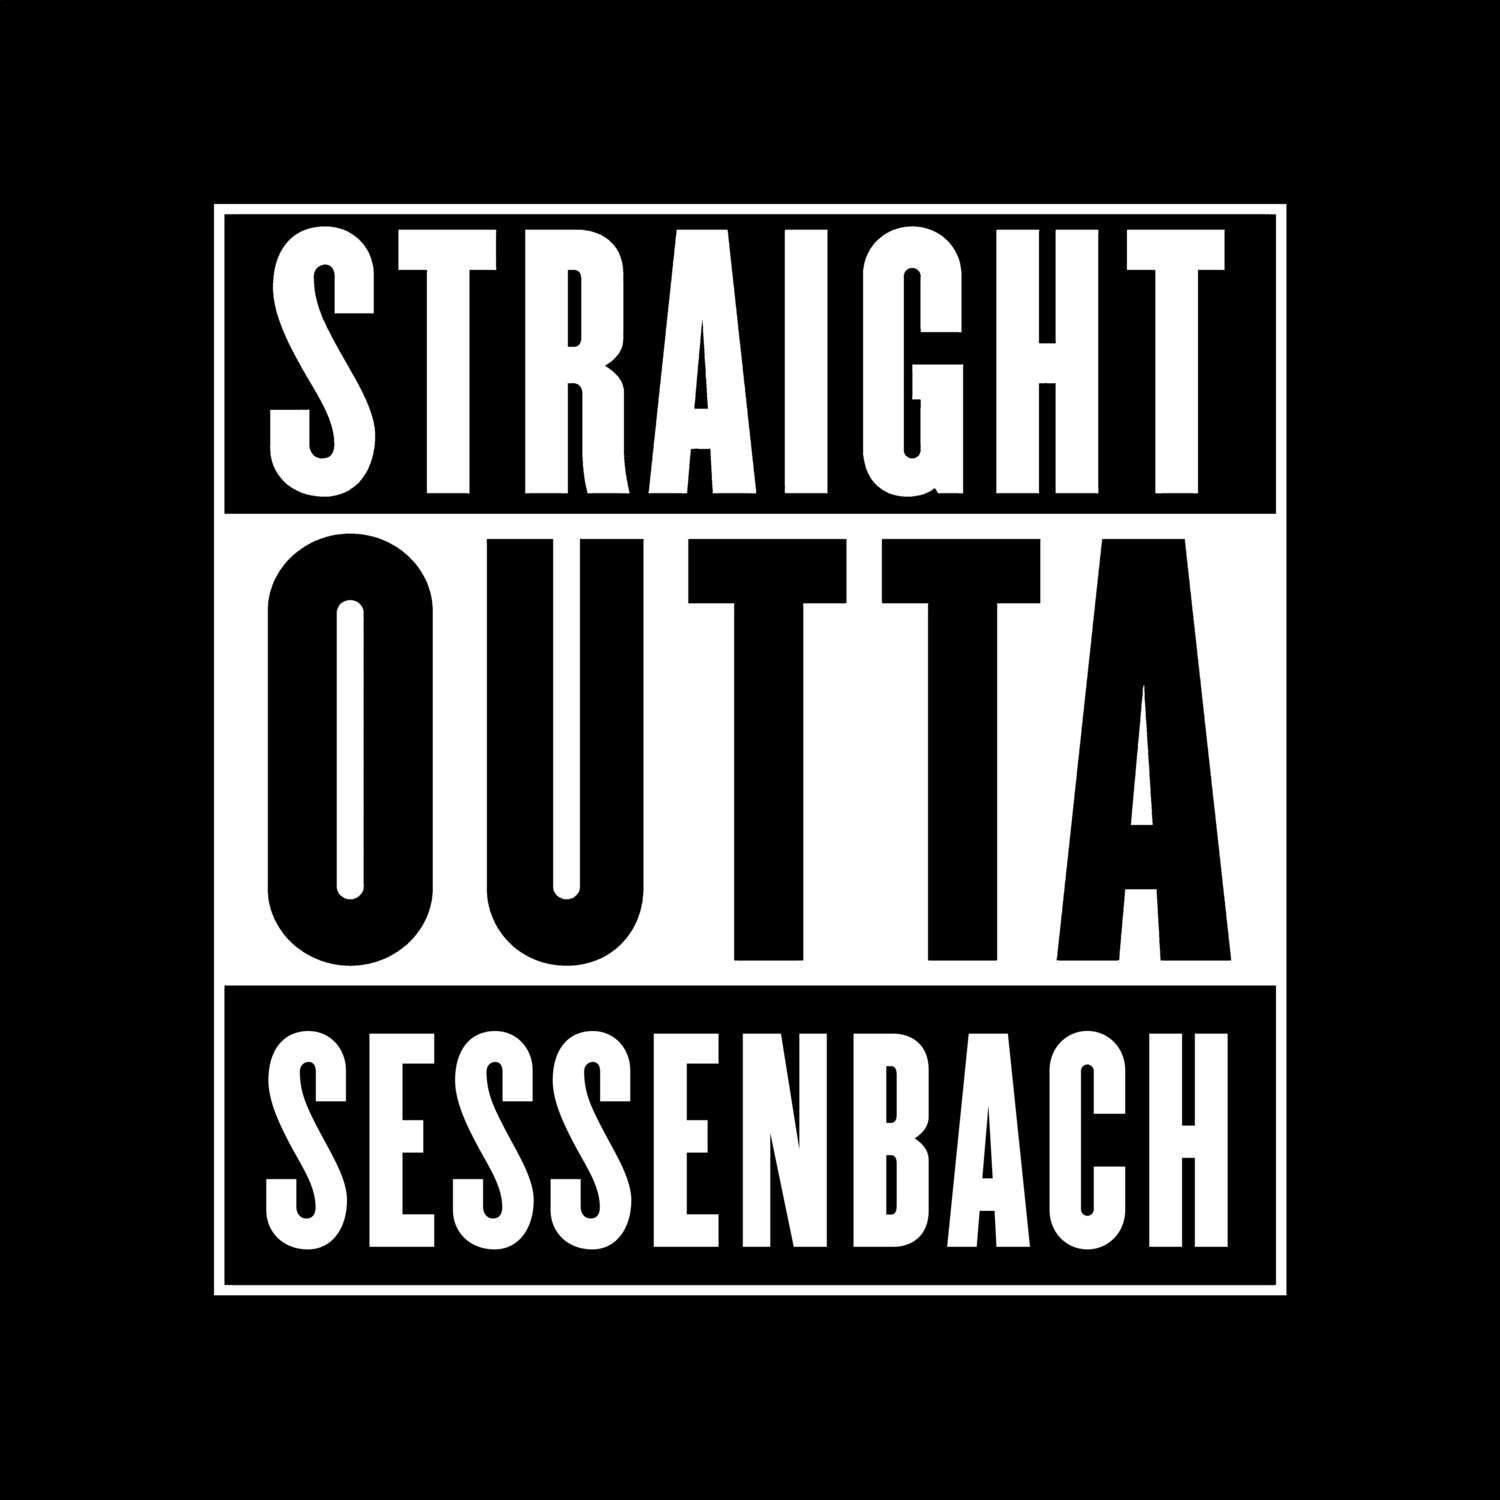 Sessenbach T-Shirt »Straight Outta«